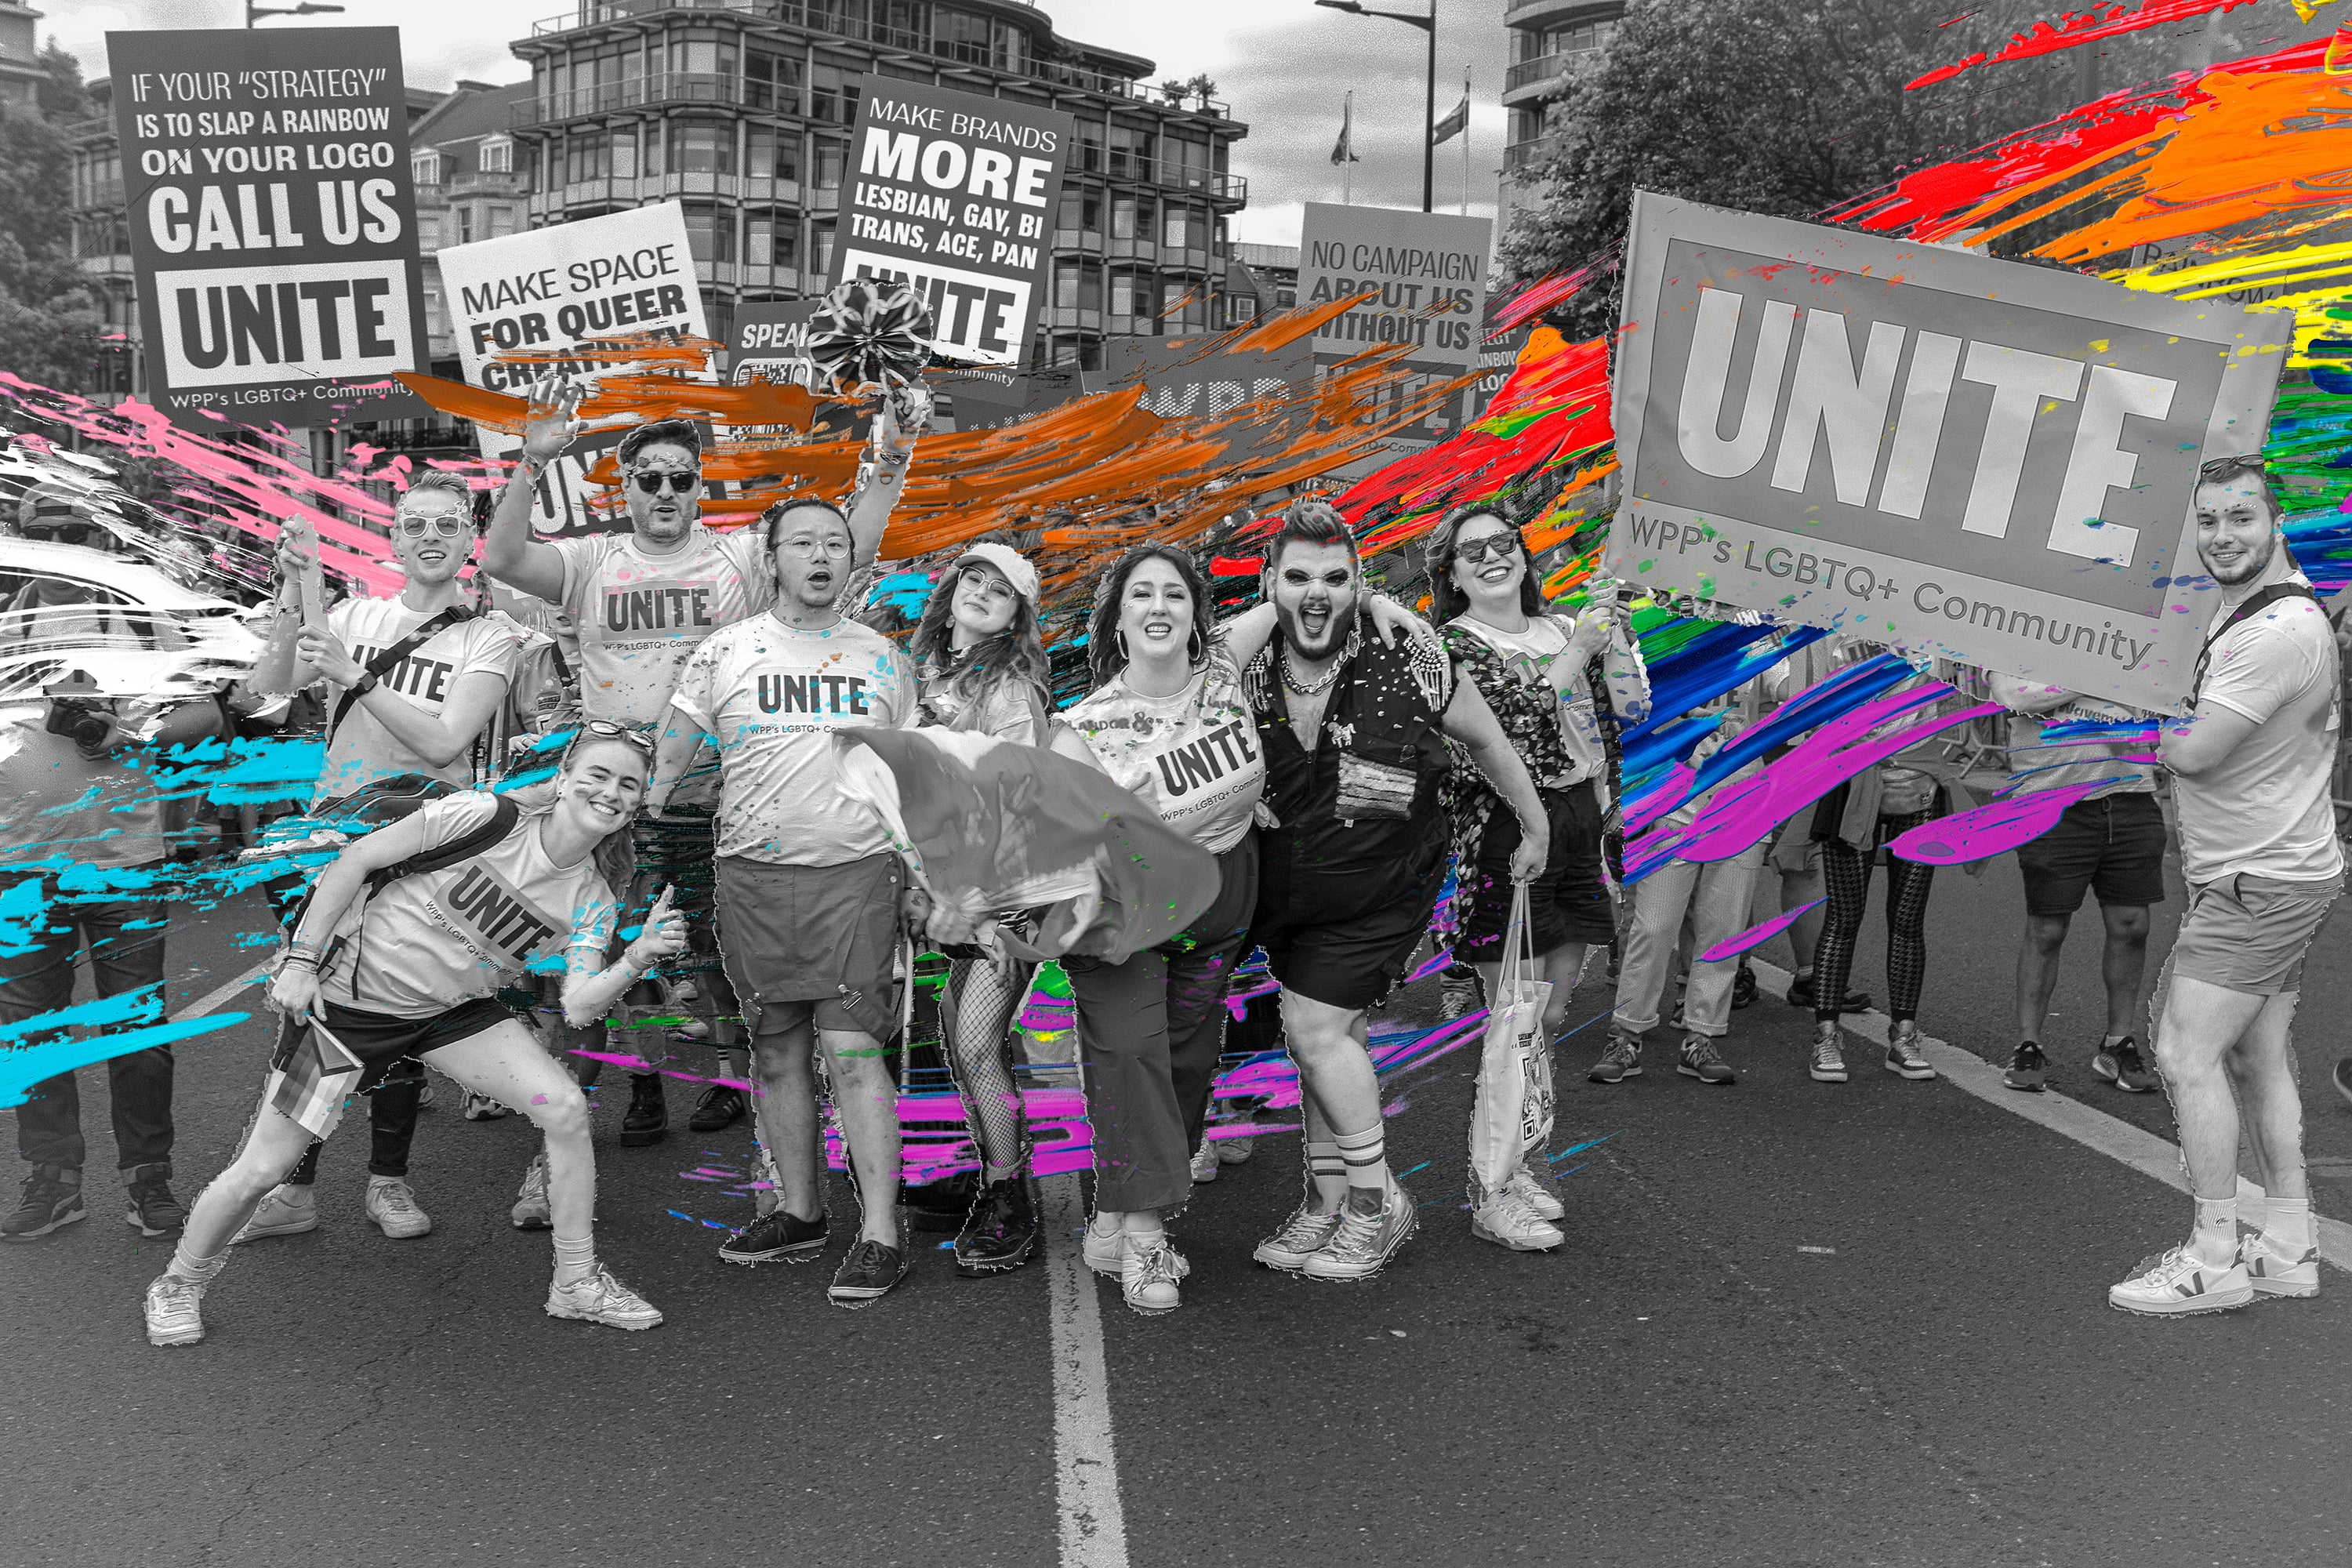 Unite Team in Pride in London campaign